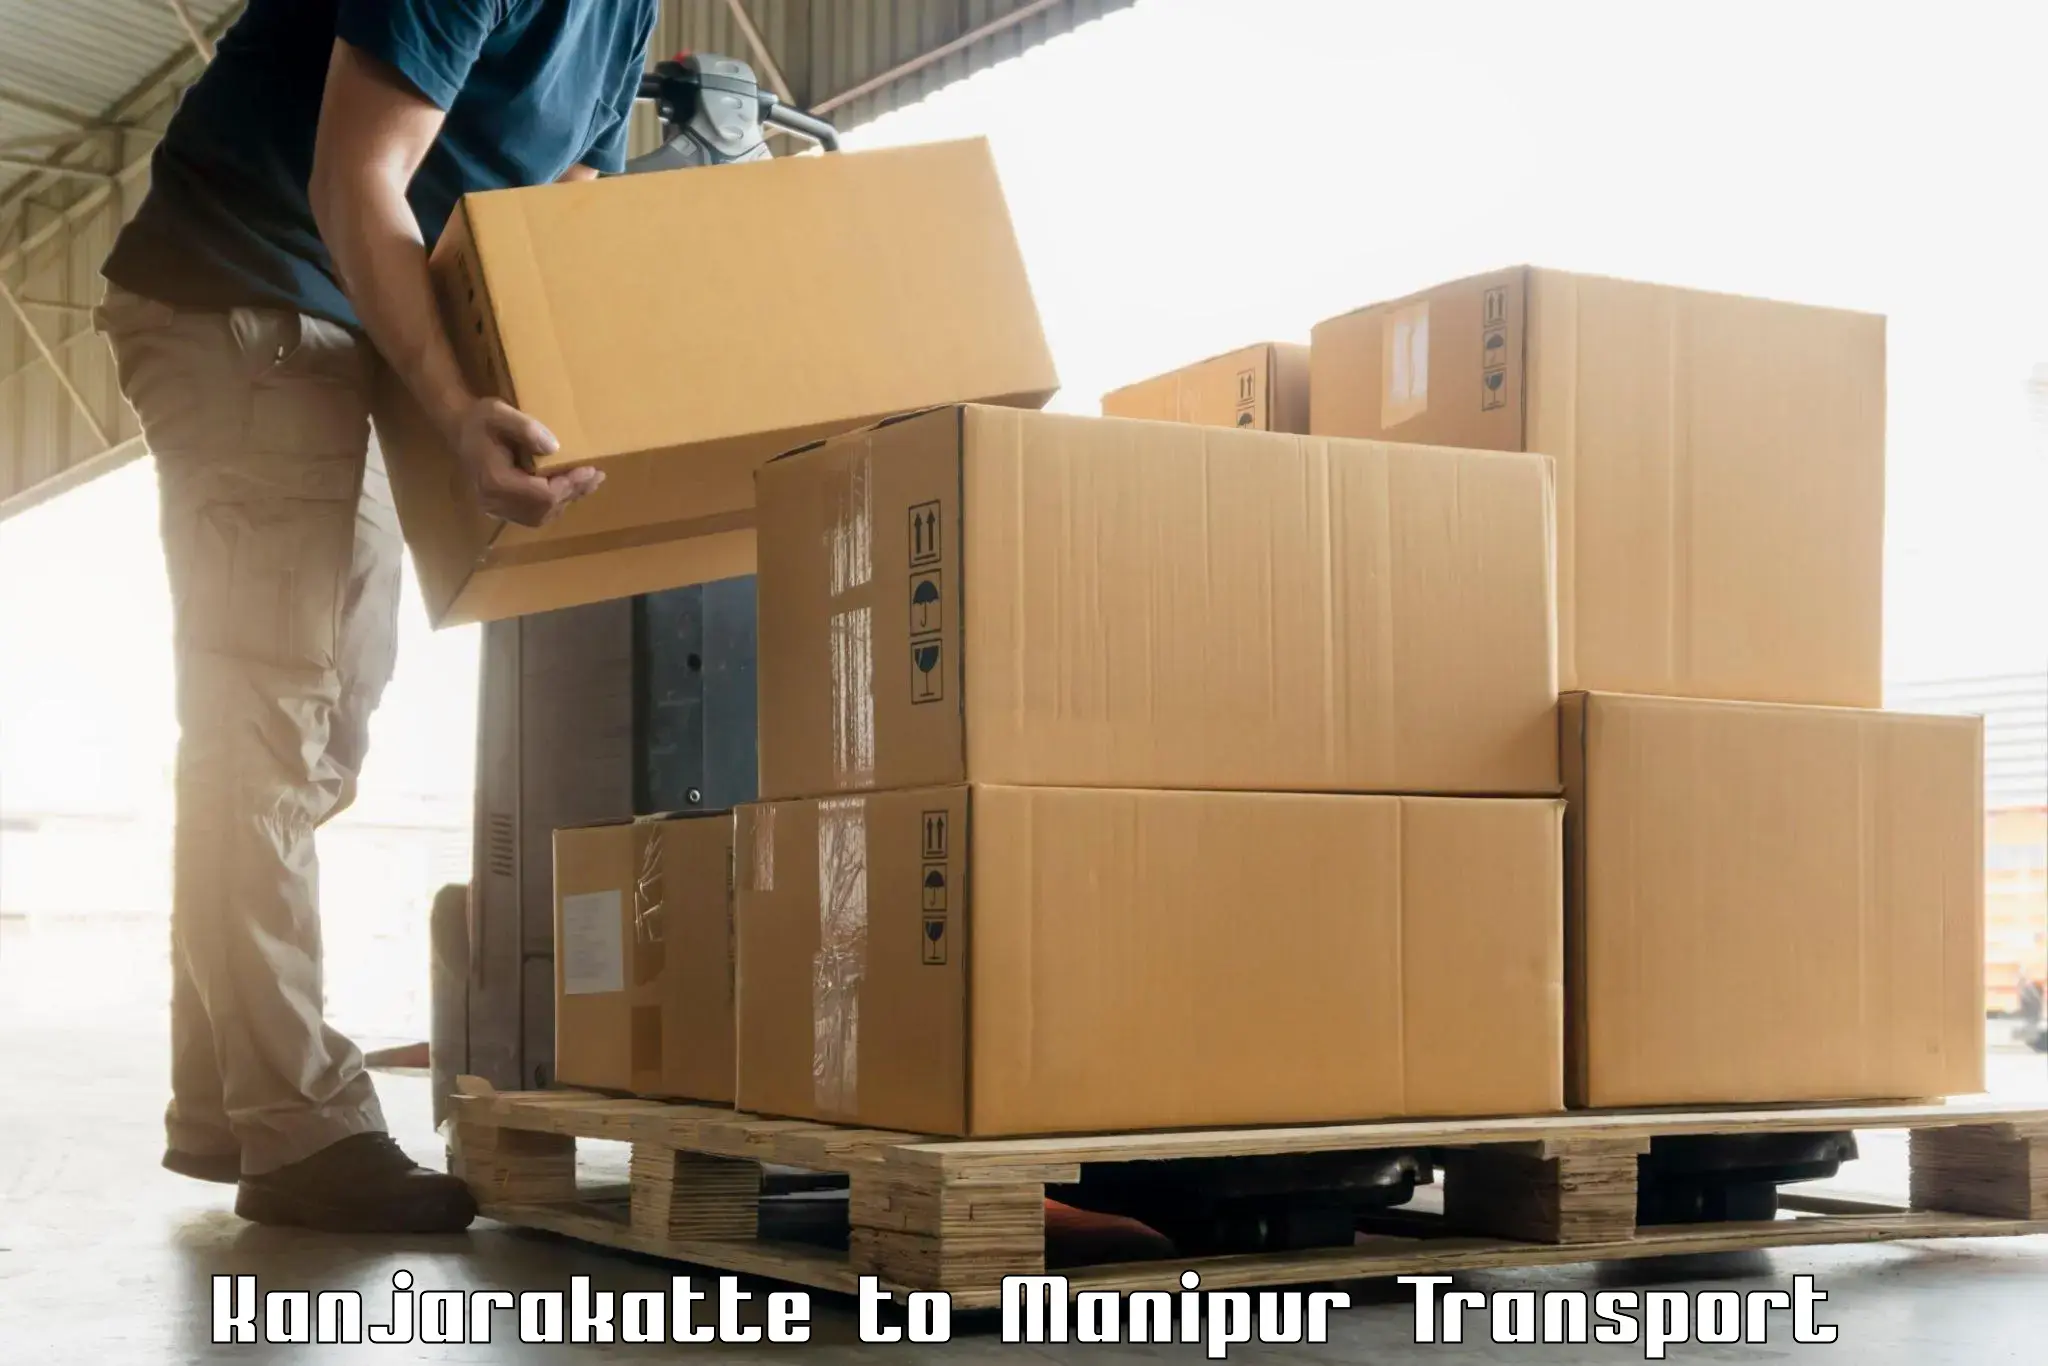 Luggage transport services in Kanjarakatte to Moirang